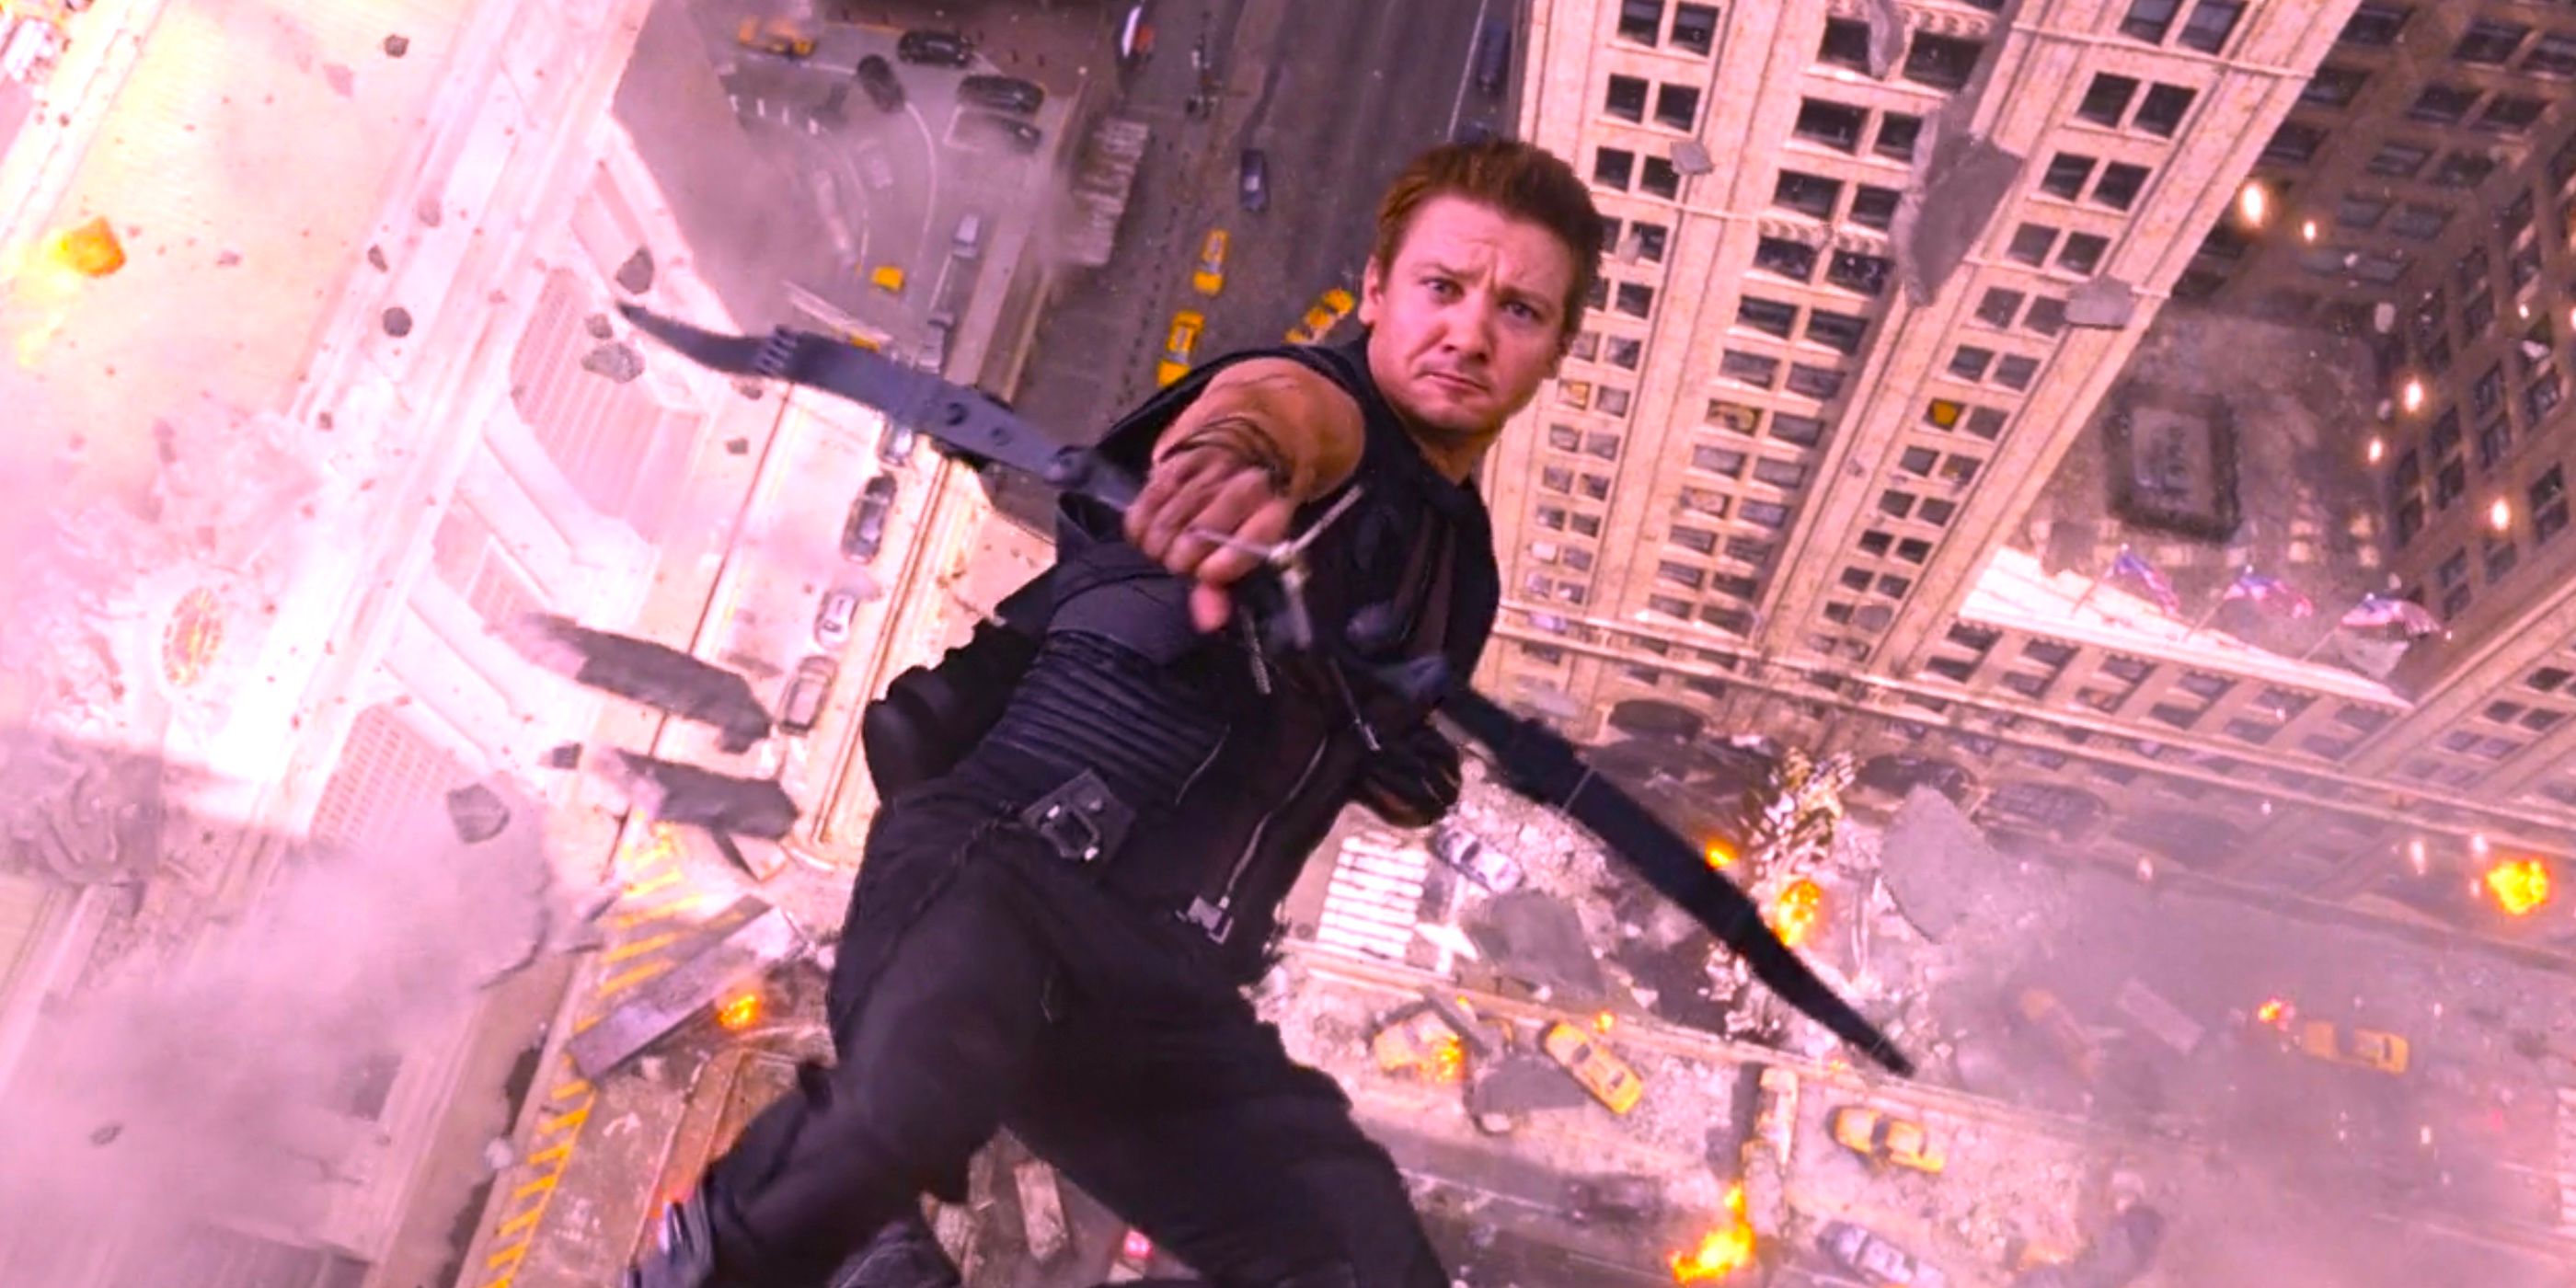 Hawkeye fires an arrow in Avengers